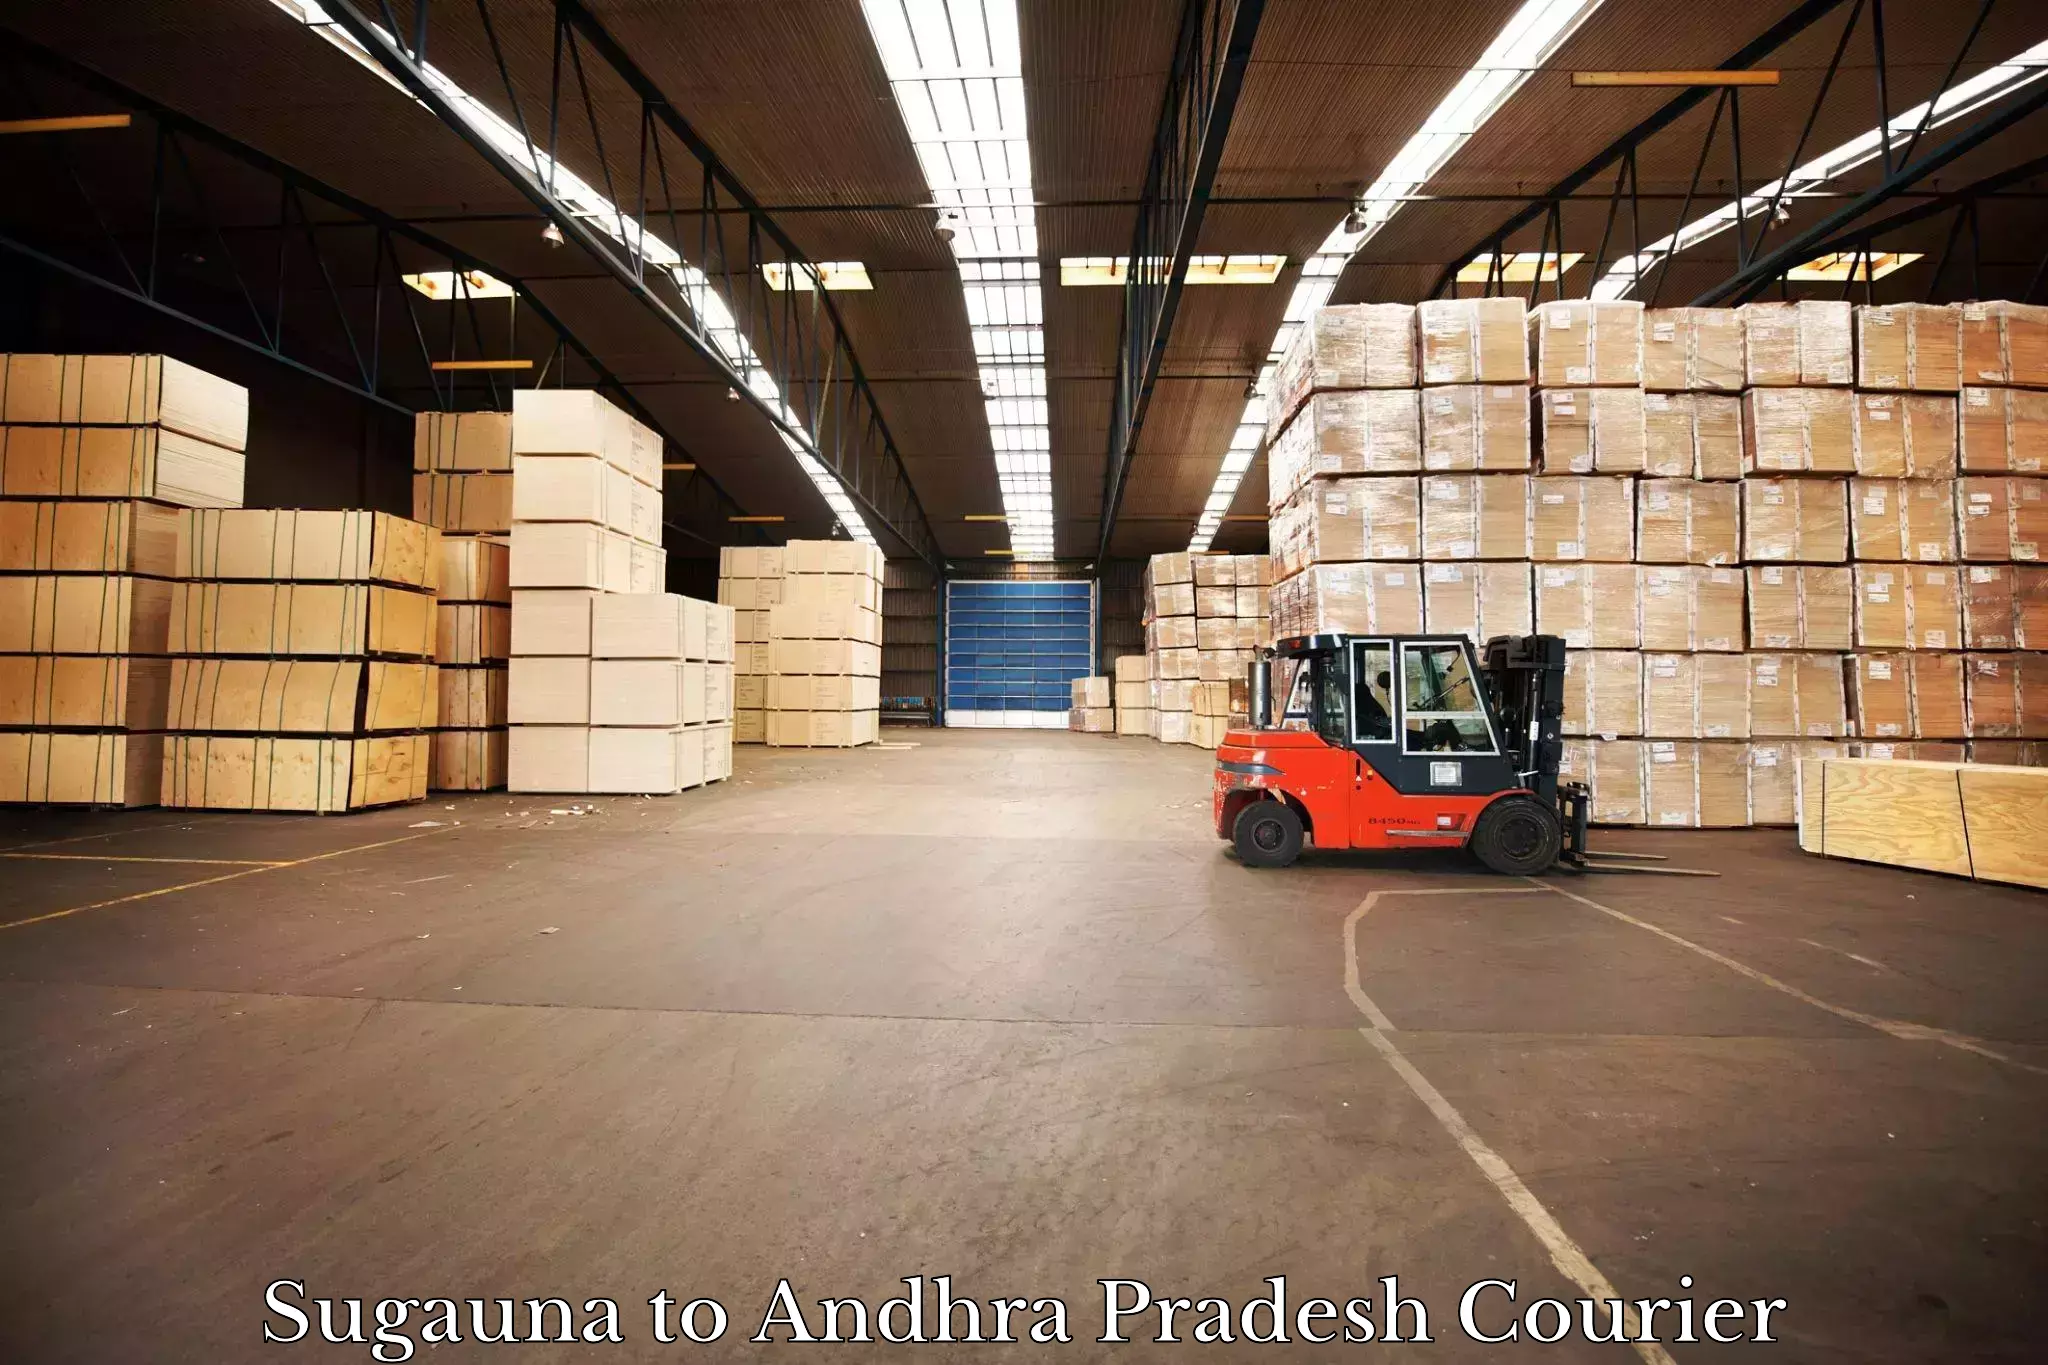 Logistics service provider Sugauna to Vempalli